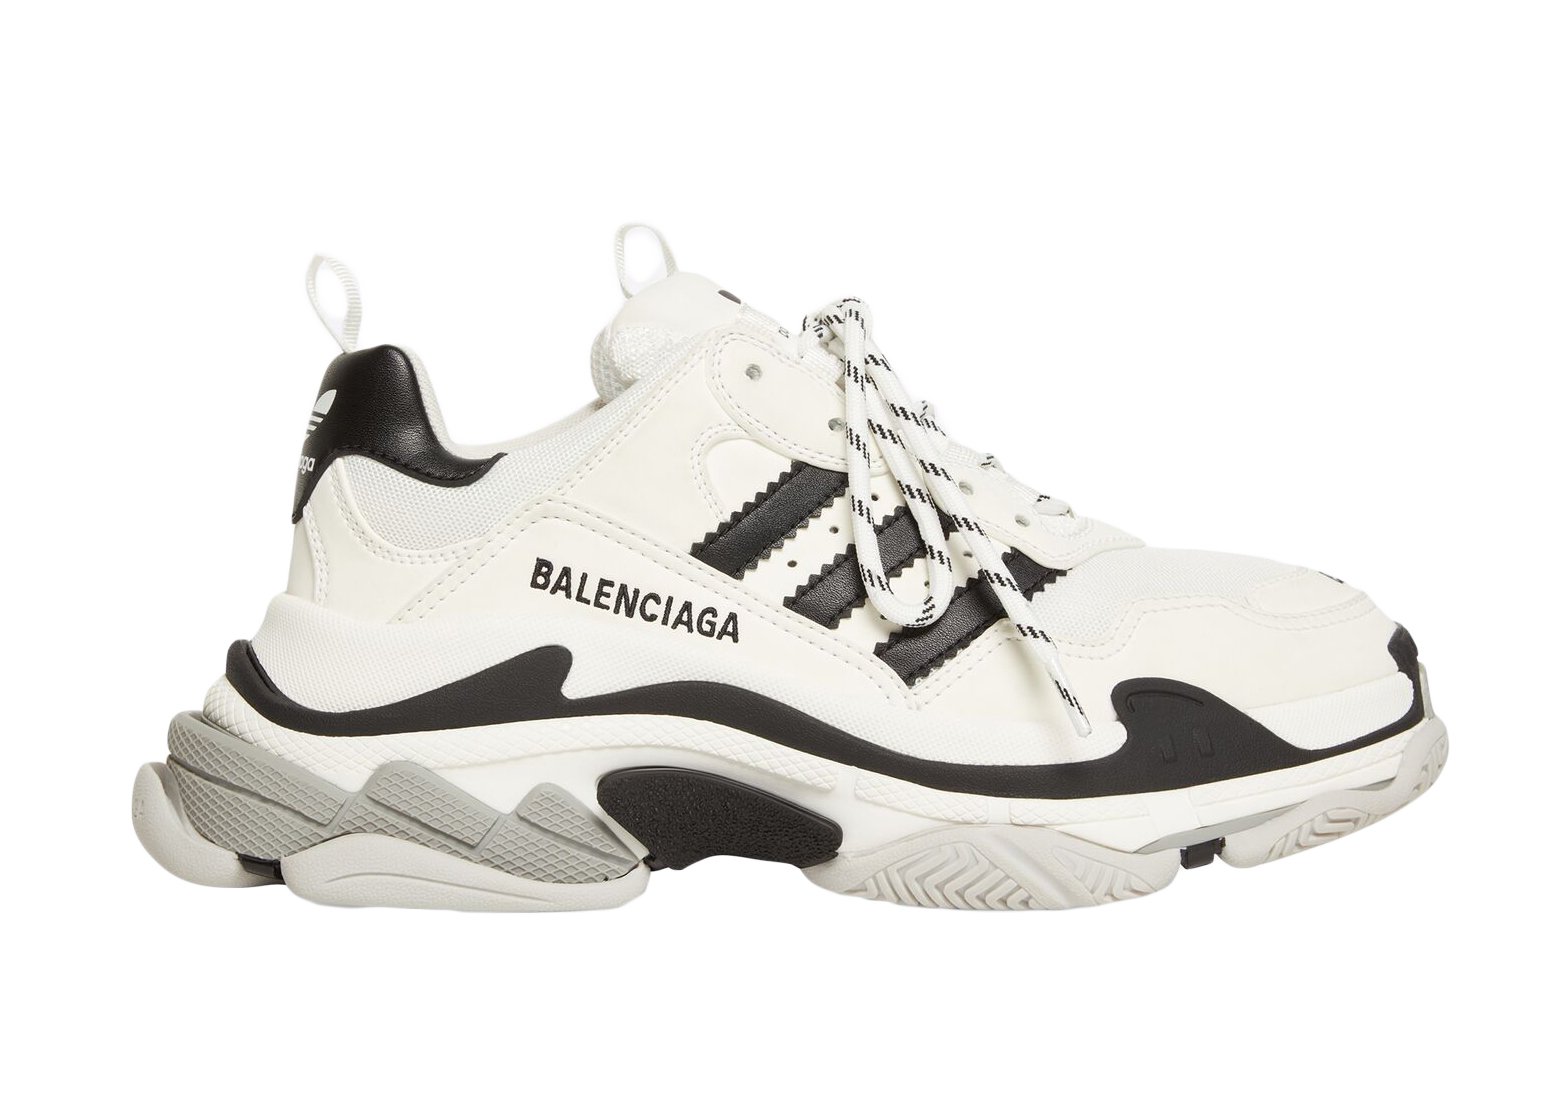 Balenciaga Triple S adidas White Black (W) sneakers